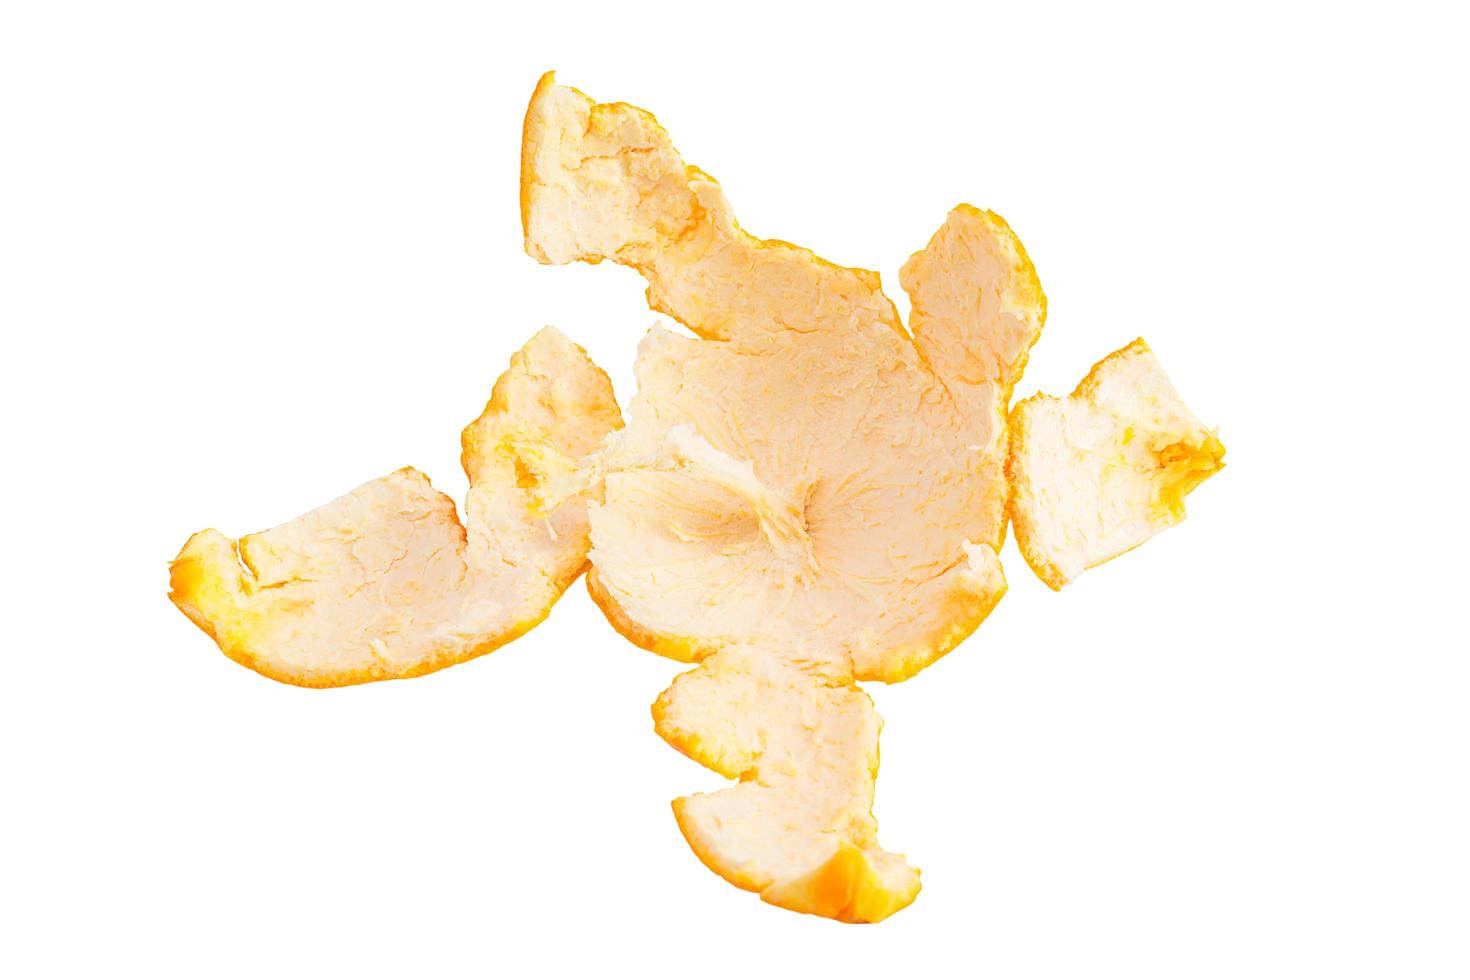 Orange peel against white background photo